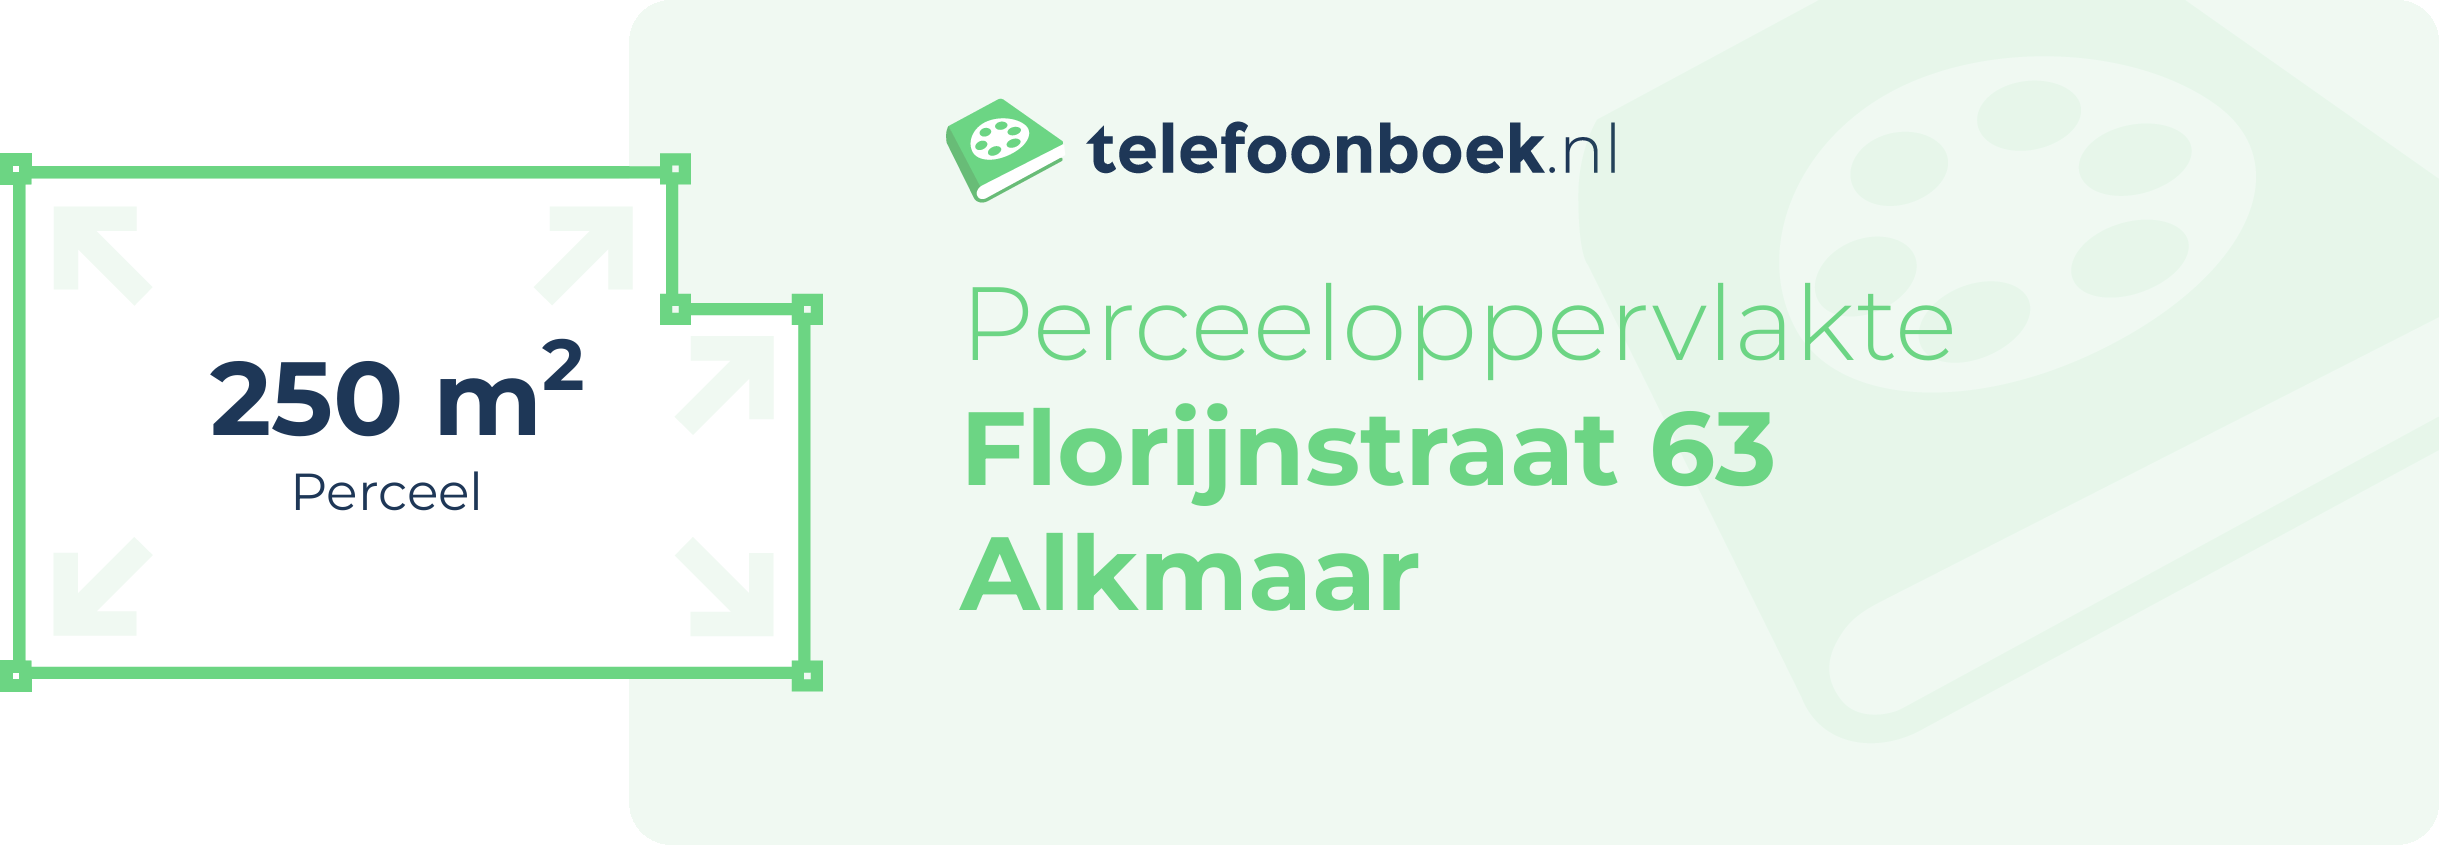 Perceeloppervlakte Florijnstraat 63 Alkmaar